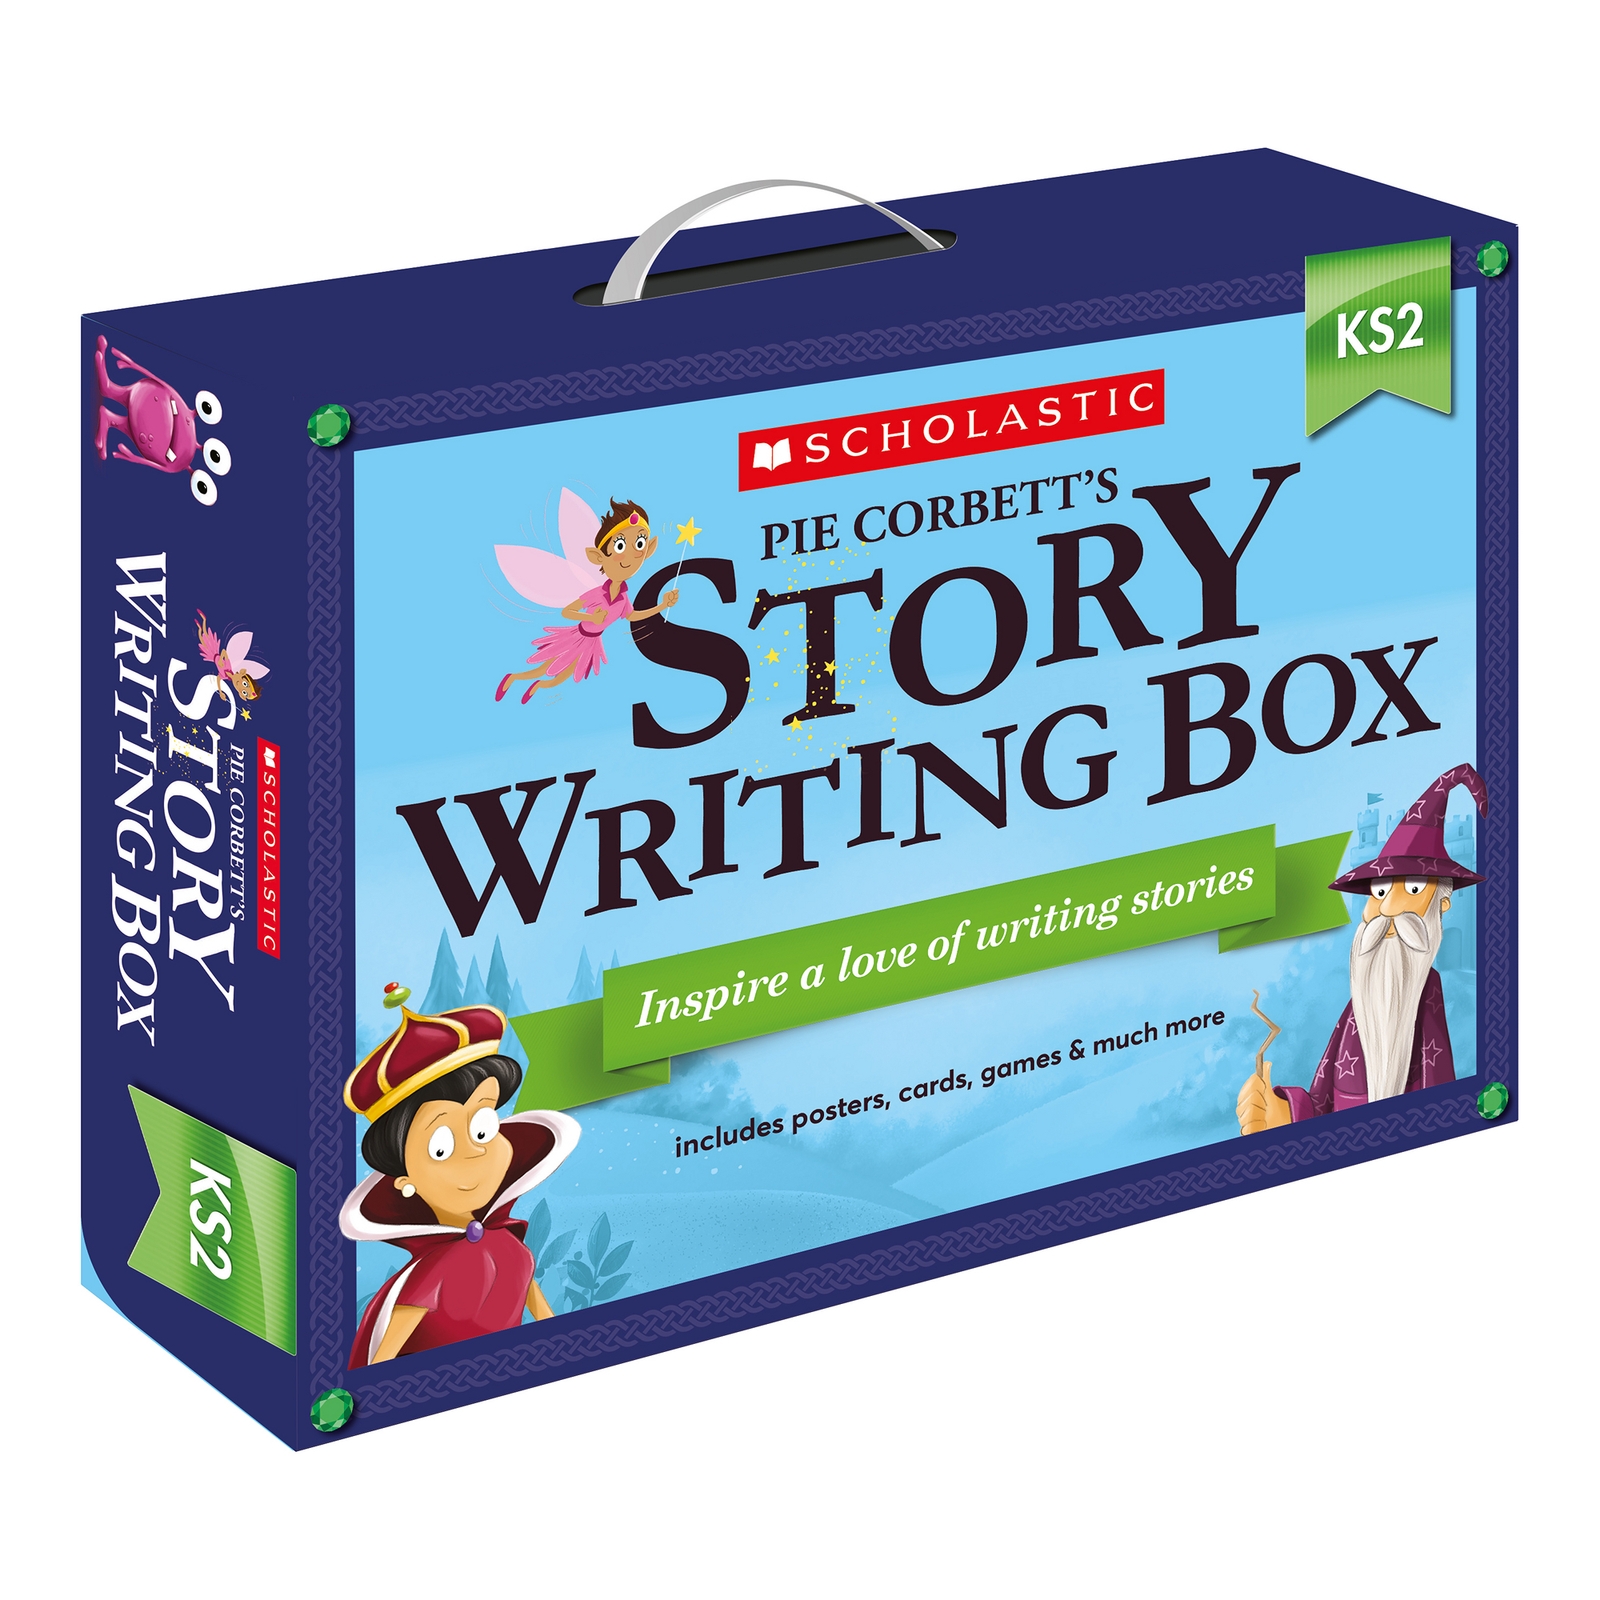 Pie Corbett's KS2 Story Writing Box